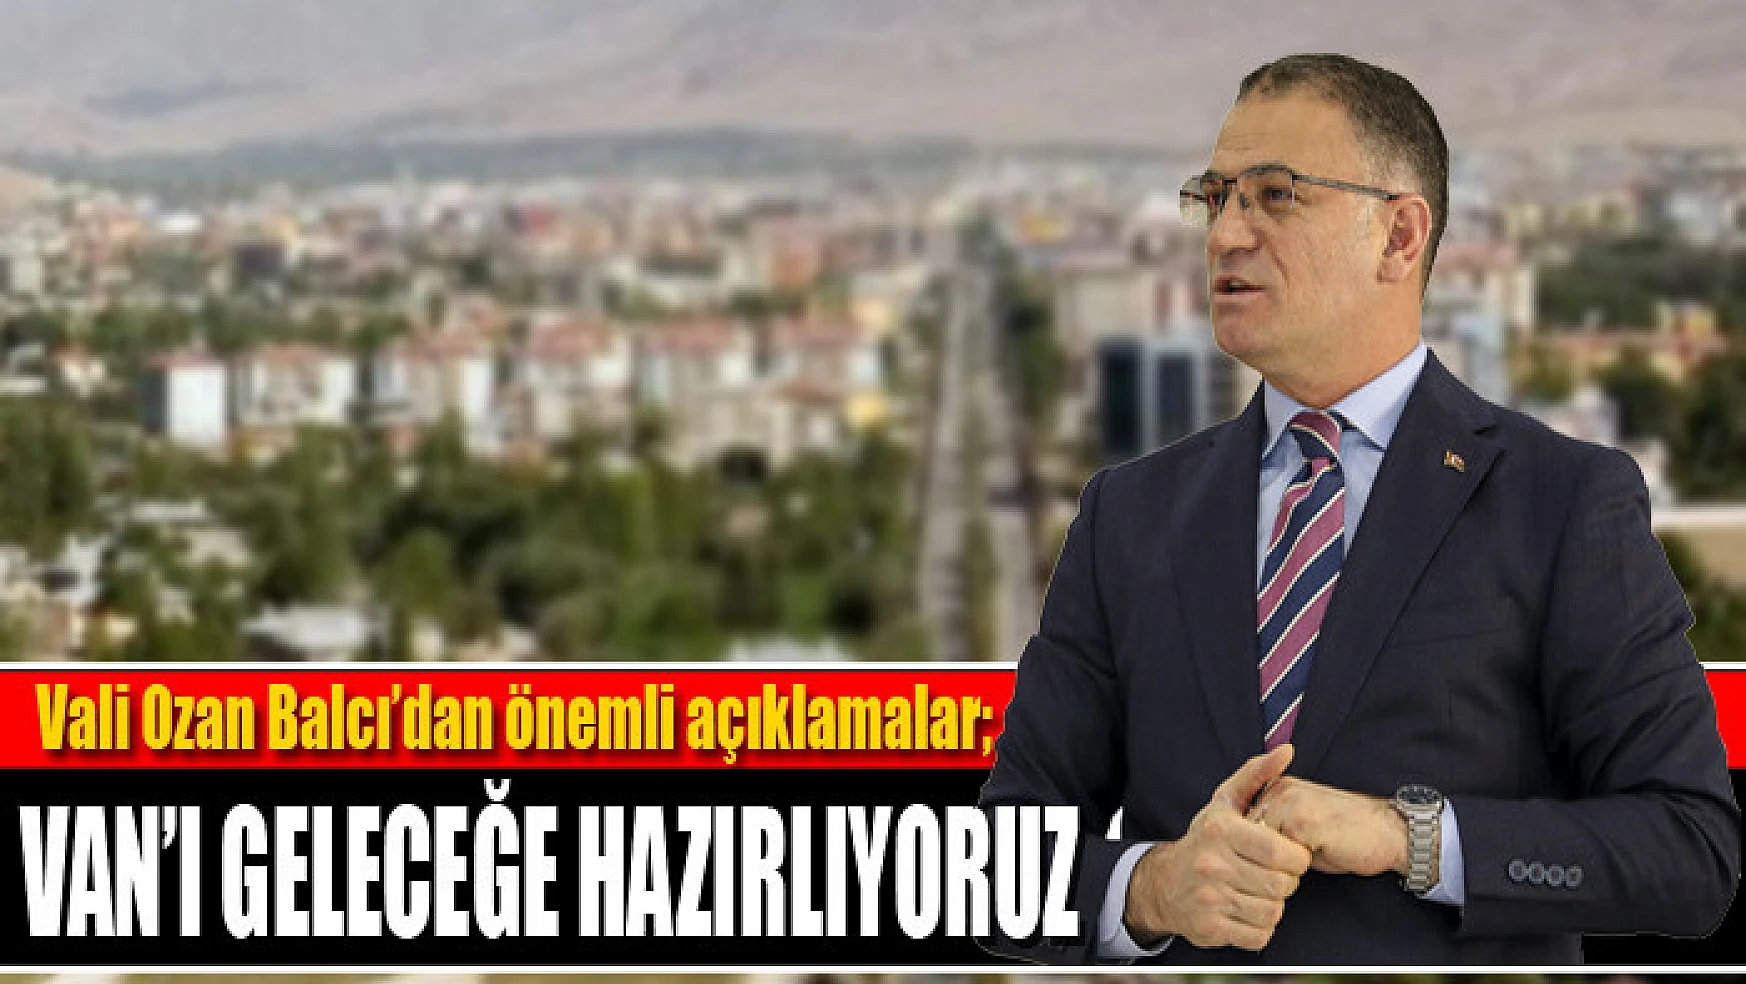 Vali Balcı: Van'ı geleceğe hazırlıyoruz